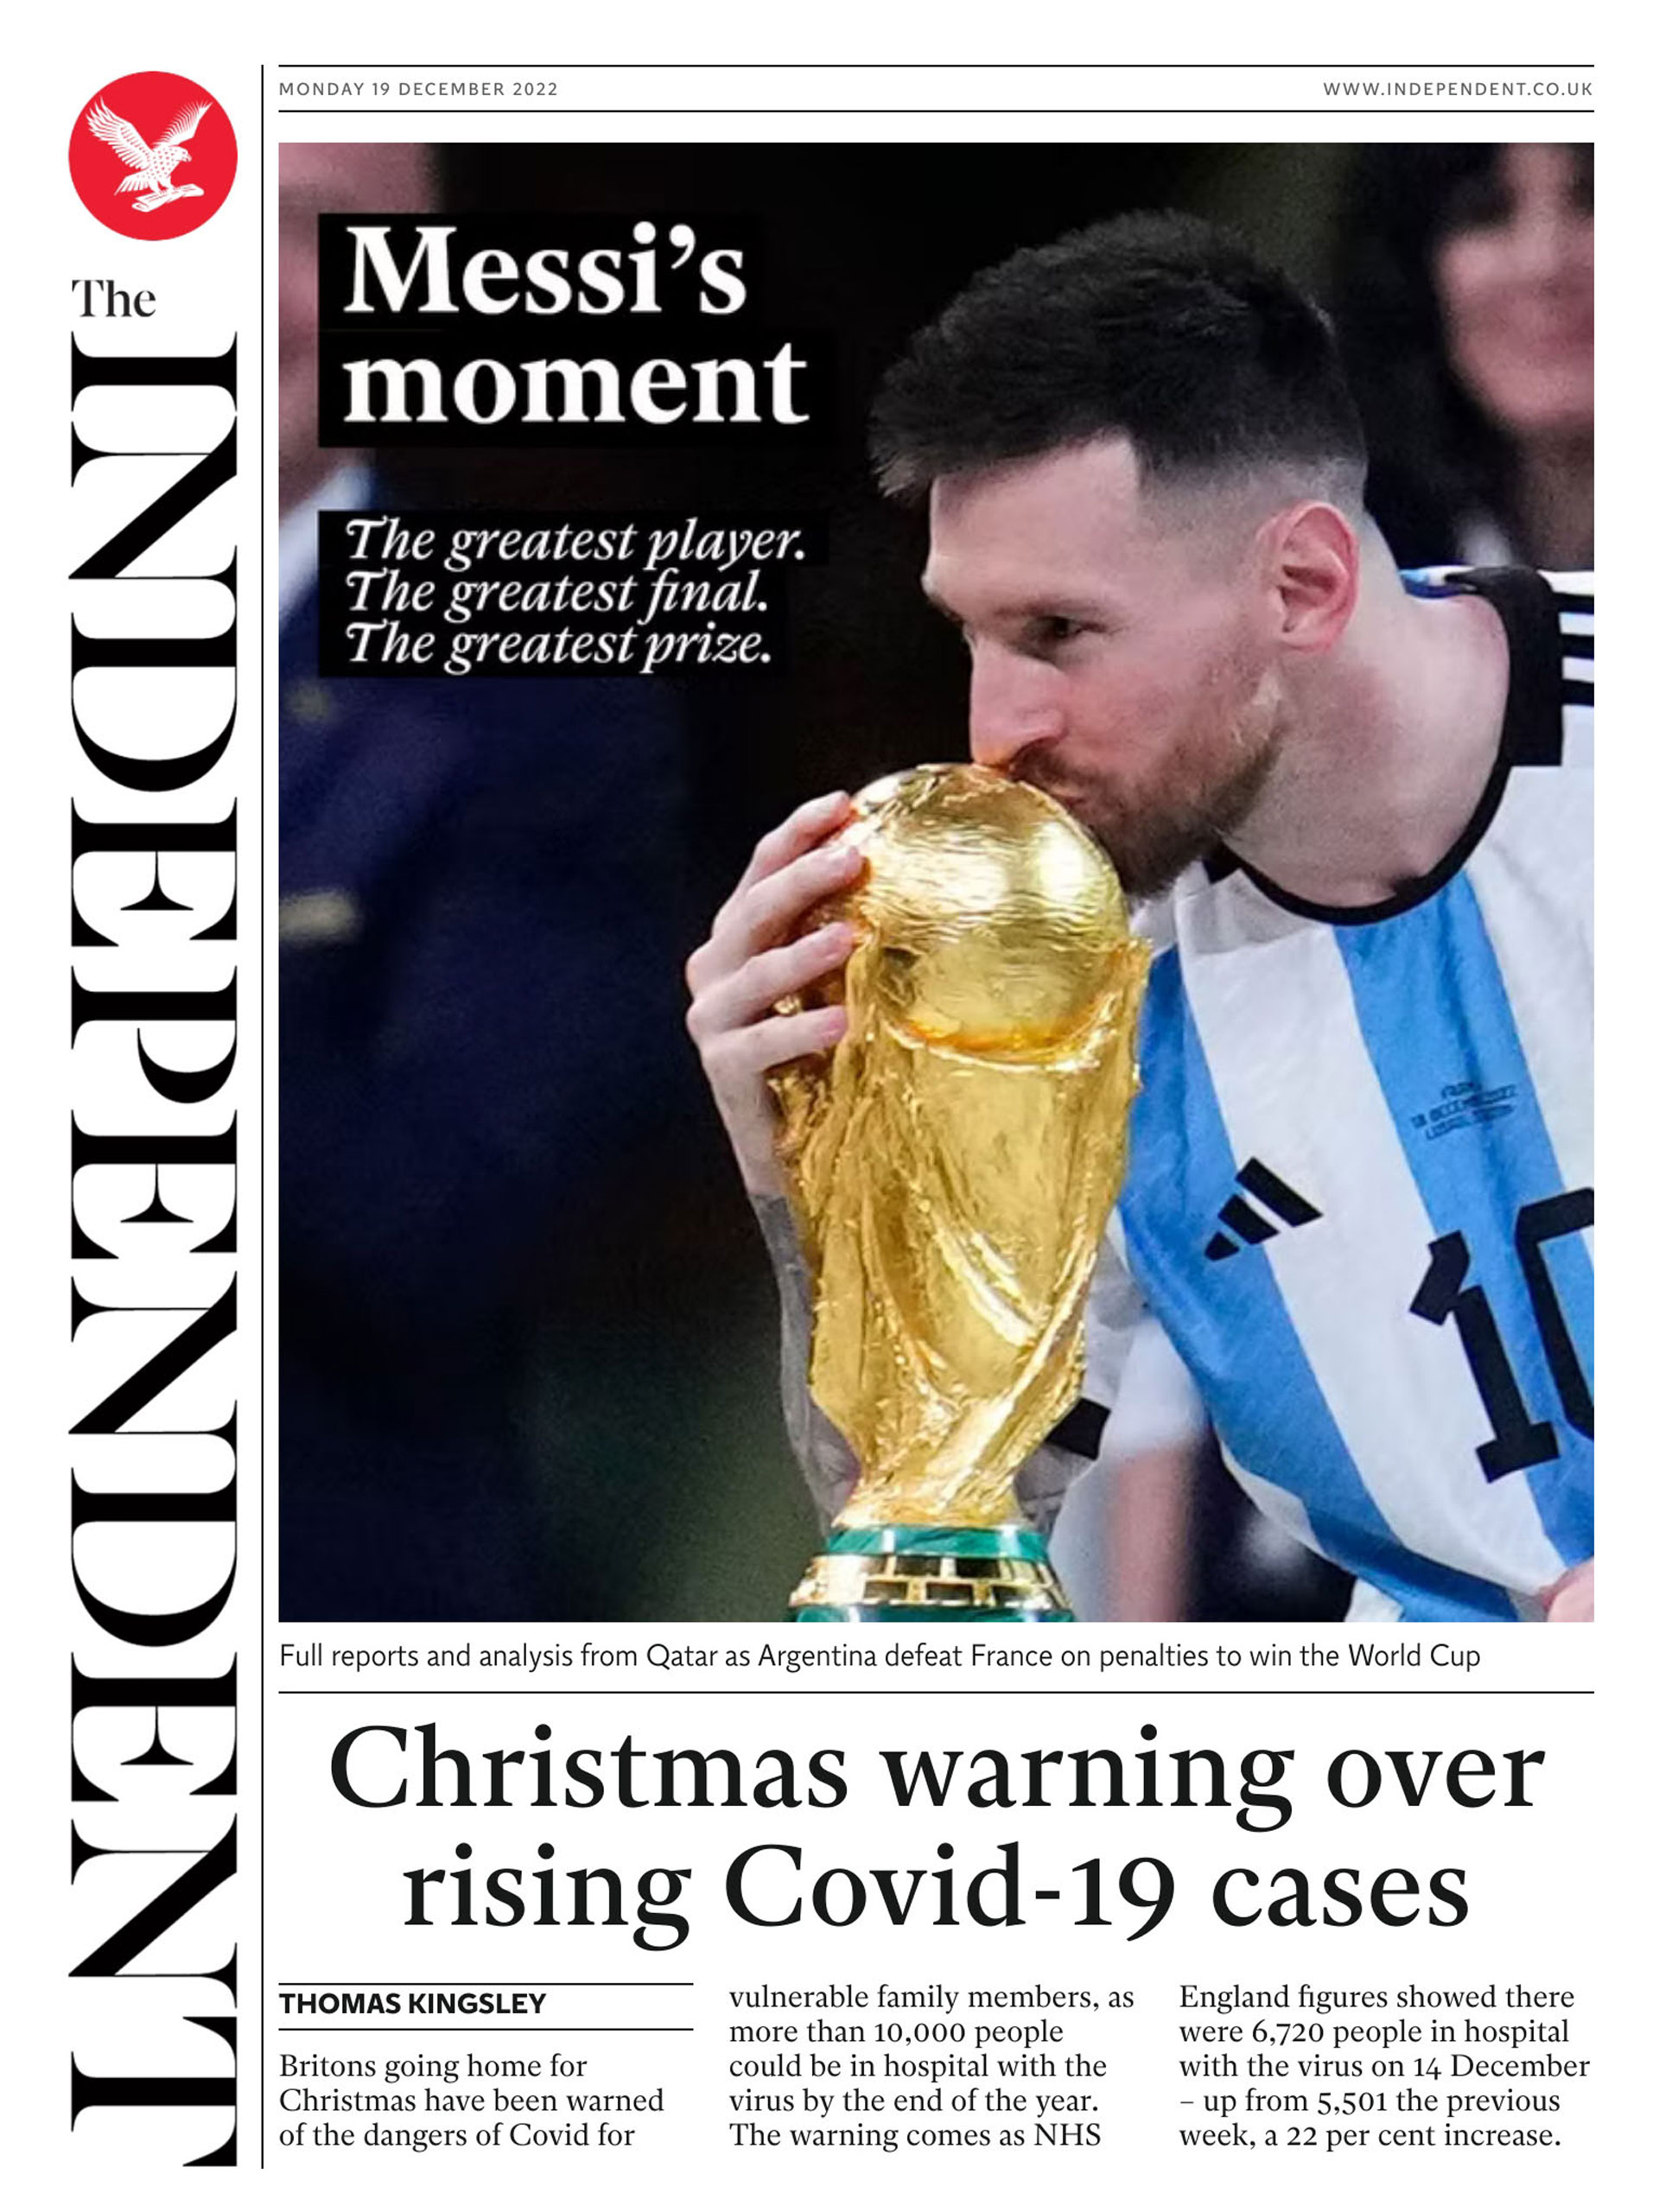 Lionel Messi ganó su primer Mundial en su segunda final dentro de una Copa del Mundo y así lo reflejó The Independent